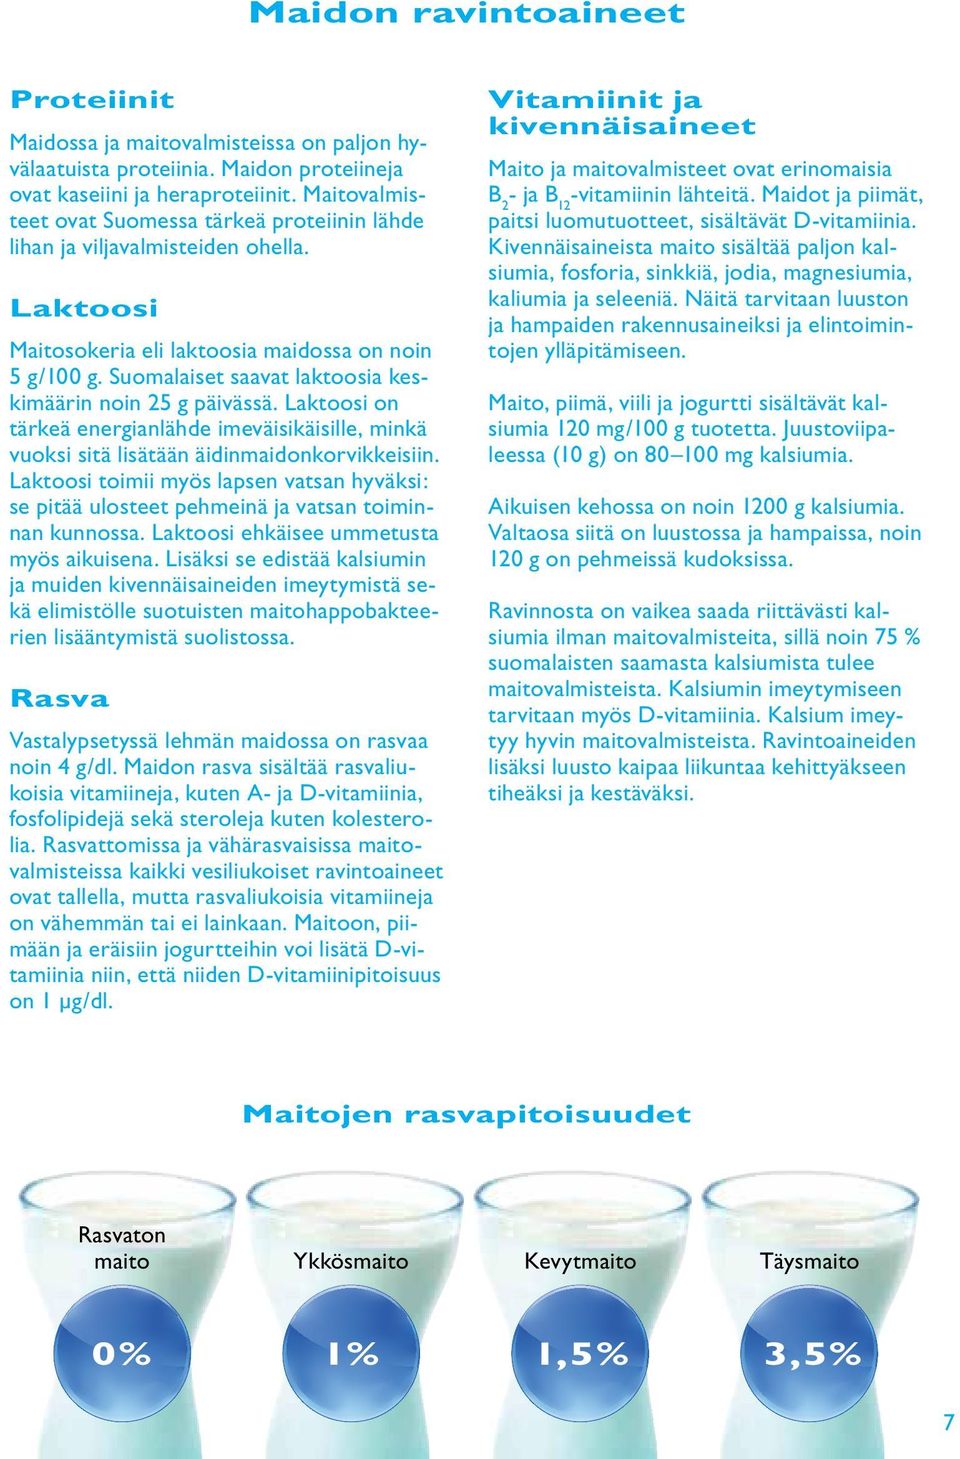 Suomalaiset saavat laktoosia keskimäärin noin 25 g päivässä. Laktoosi on tärkeä energianlähde imeväisikäisille, minkä vuoksi sitä lisätään äidinmaidonkorvikkeisiin.